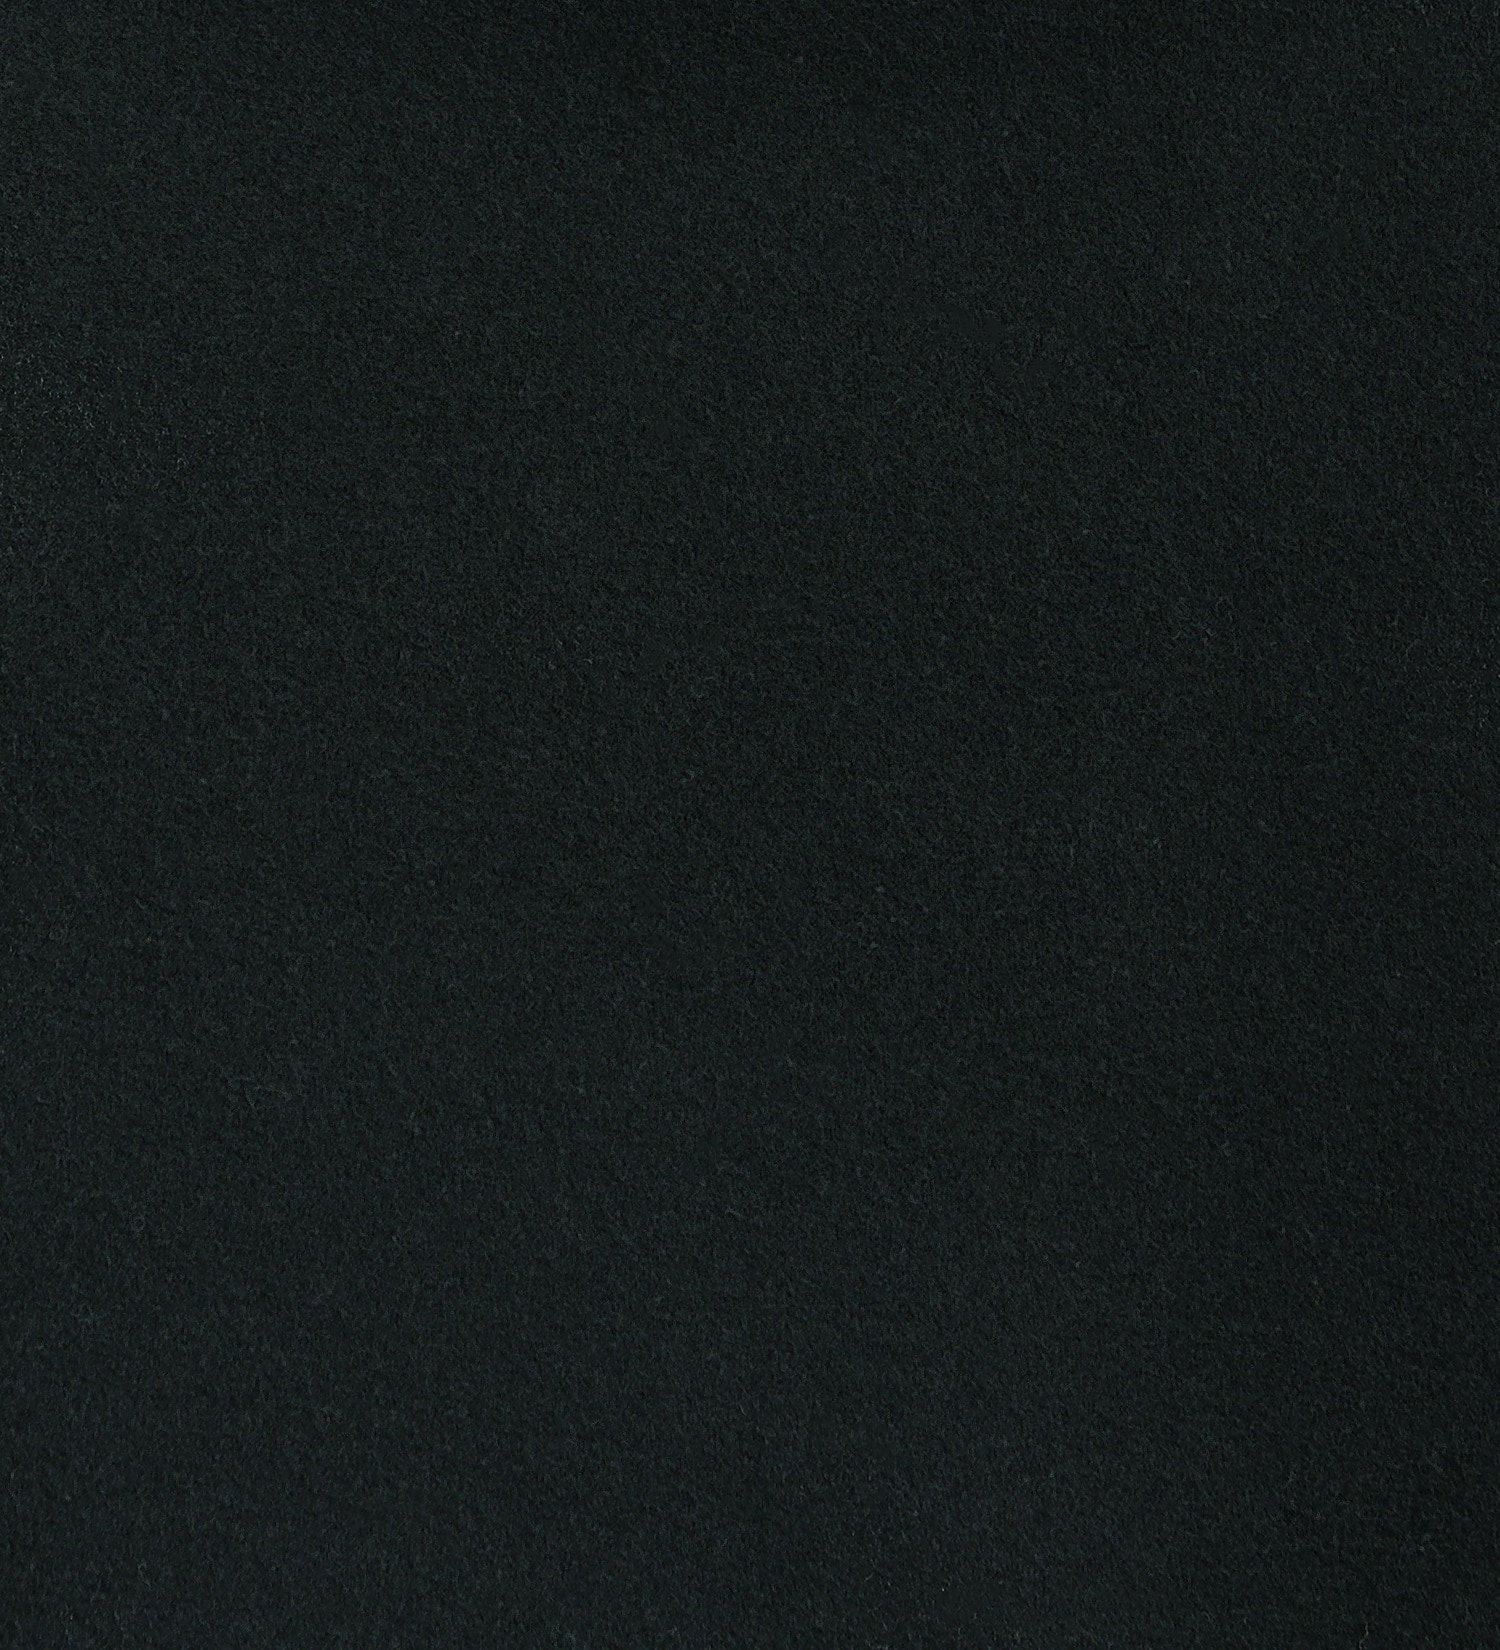 EDWIN(エドウイン)の【BLACKFRIDAY】2層で暖かい EDWIN インターナショナルベーシック レギュラーストレートパンツ403 WILD FIRE 2層ボンディング構造 【暖】|パンツ/パンツ/メンズ|ブラウン